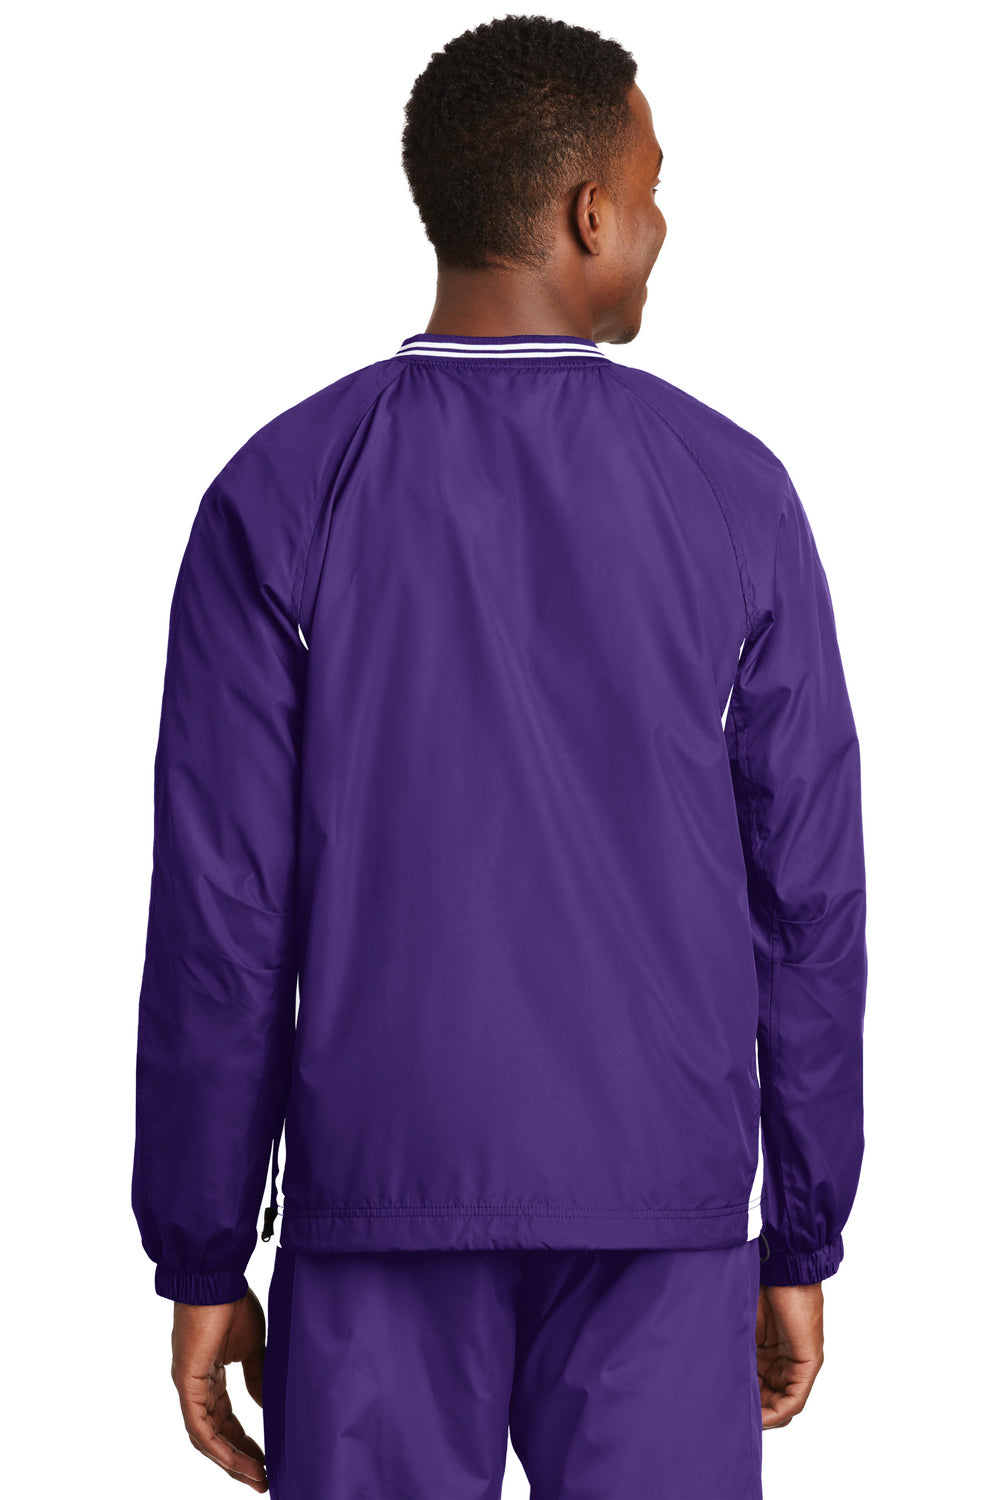 Sport-Tek JST62 Mens Wind & Water Resistant V-Neck Jacket Purple Back